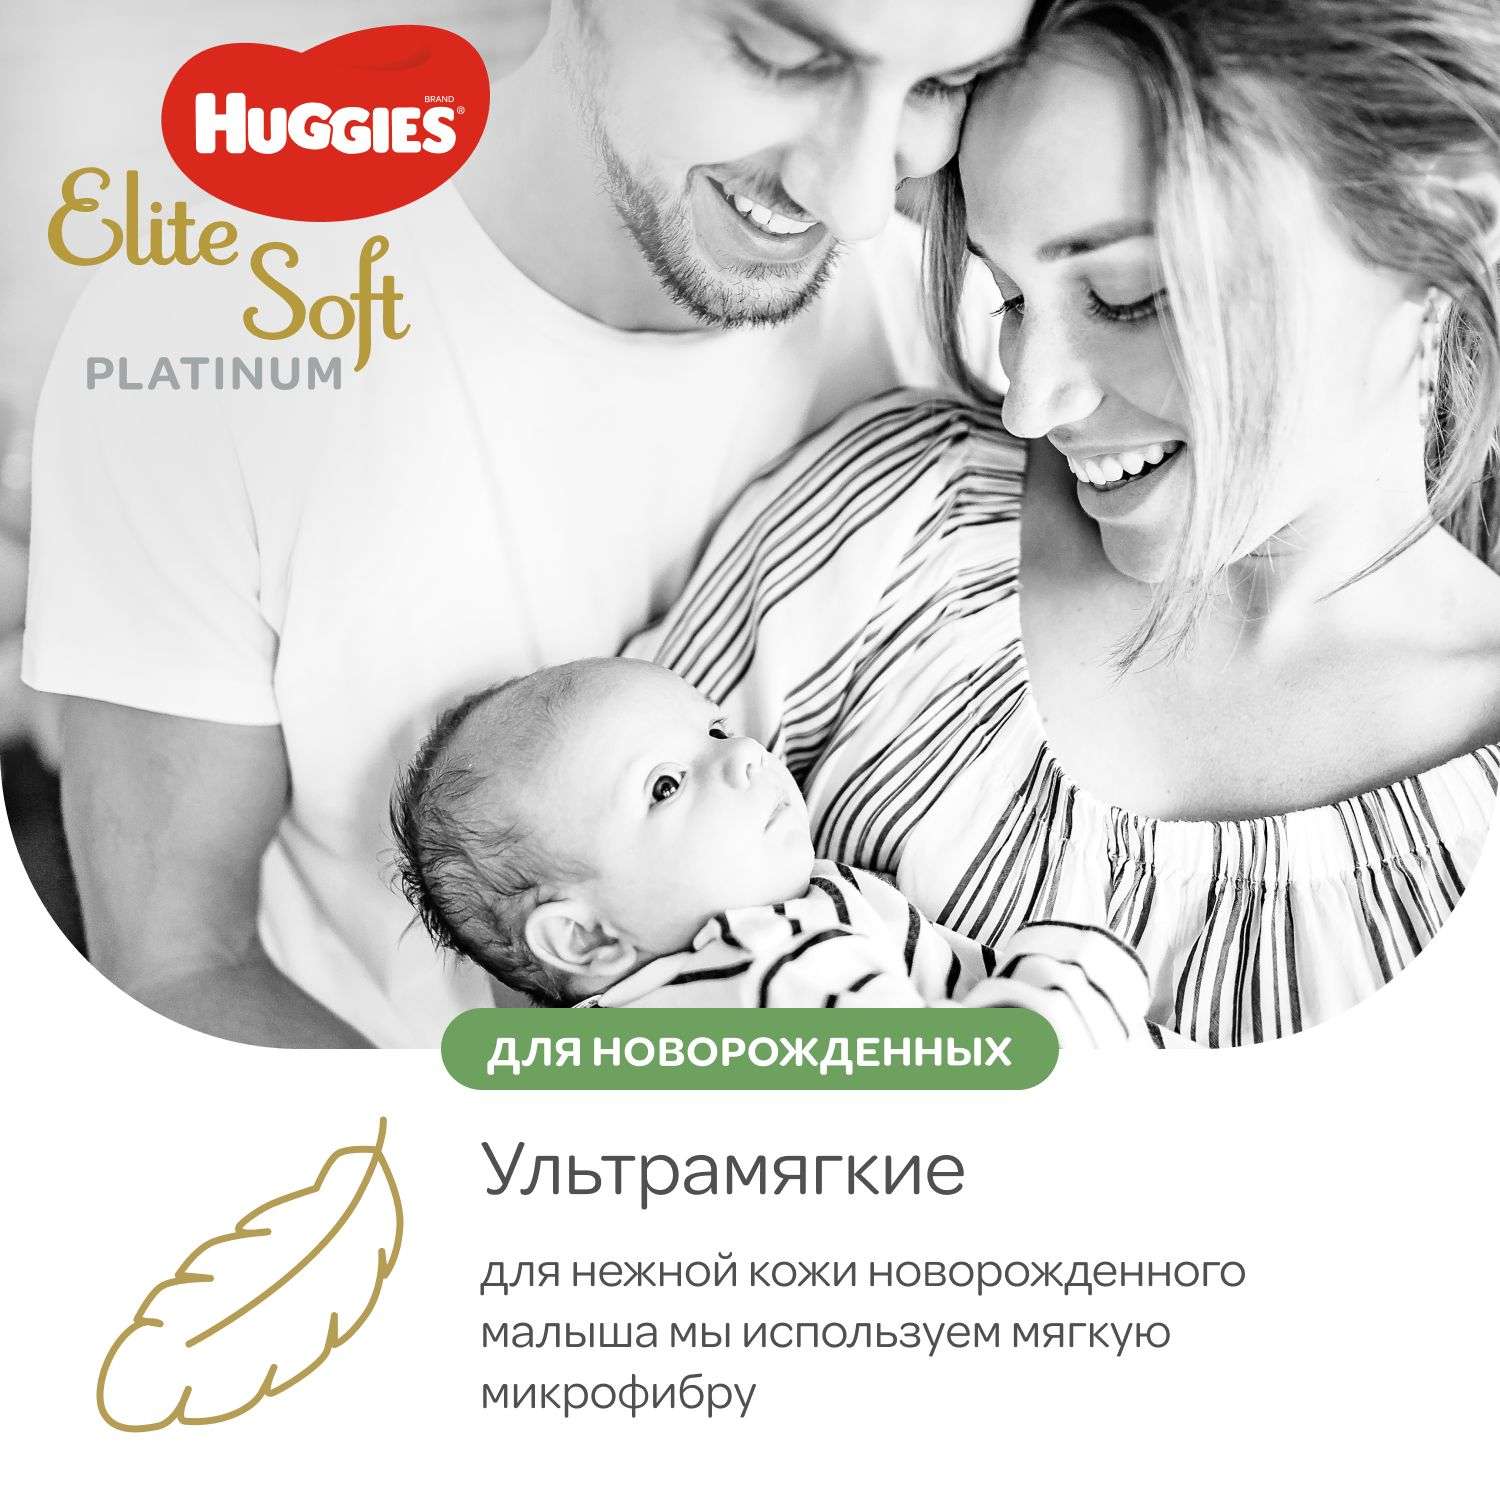 Подгузники Huggies Elite Soft Platinum для новорожденных 1 до 5кг 90шт - фото 5